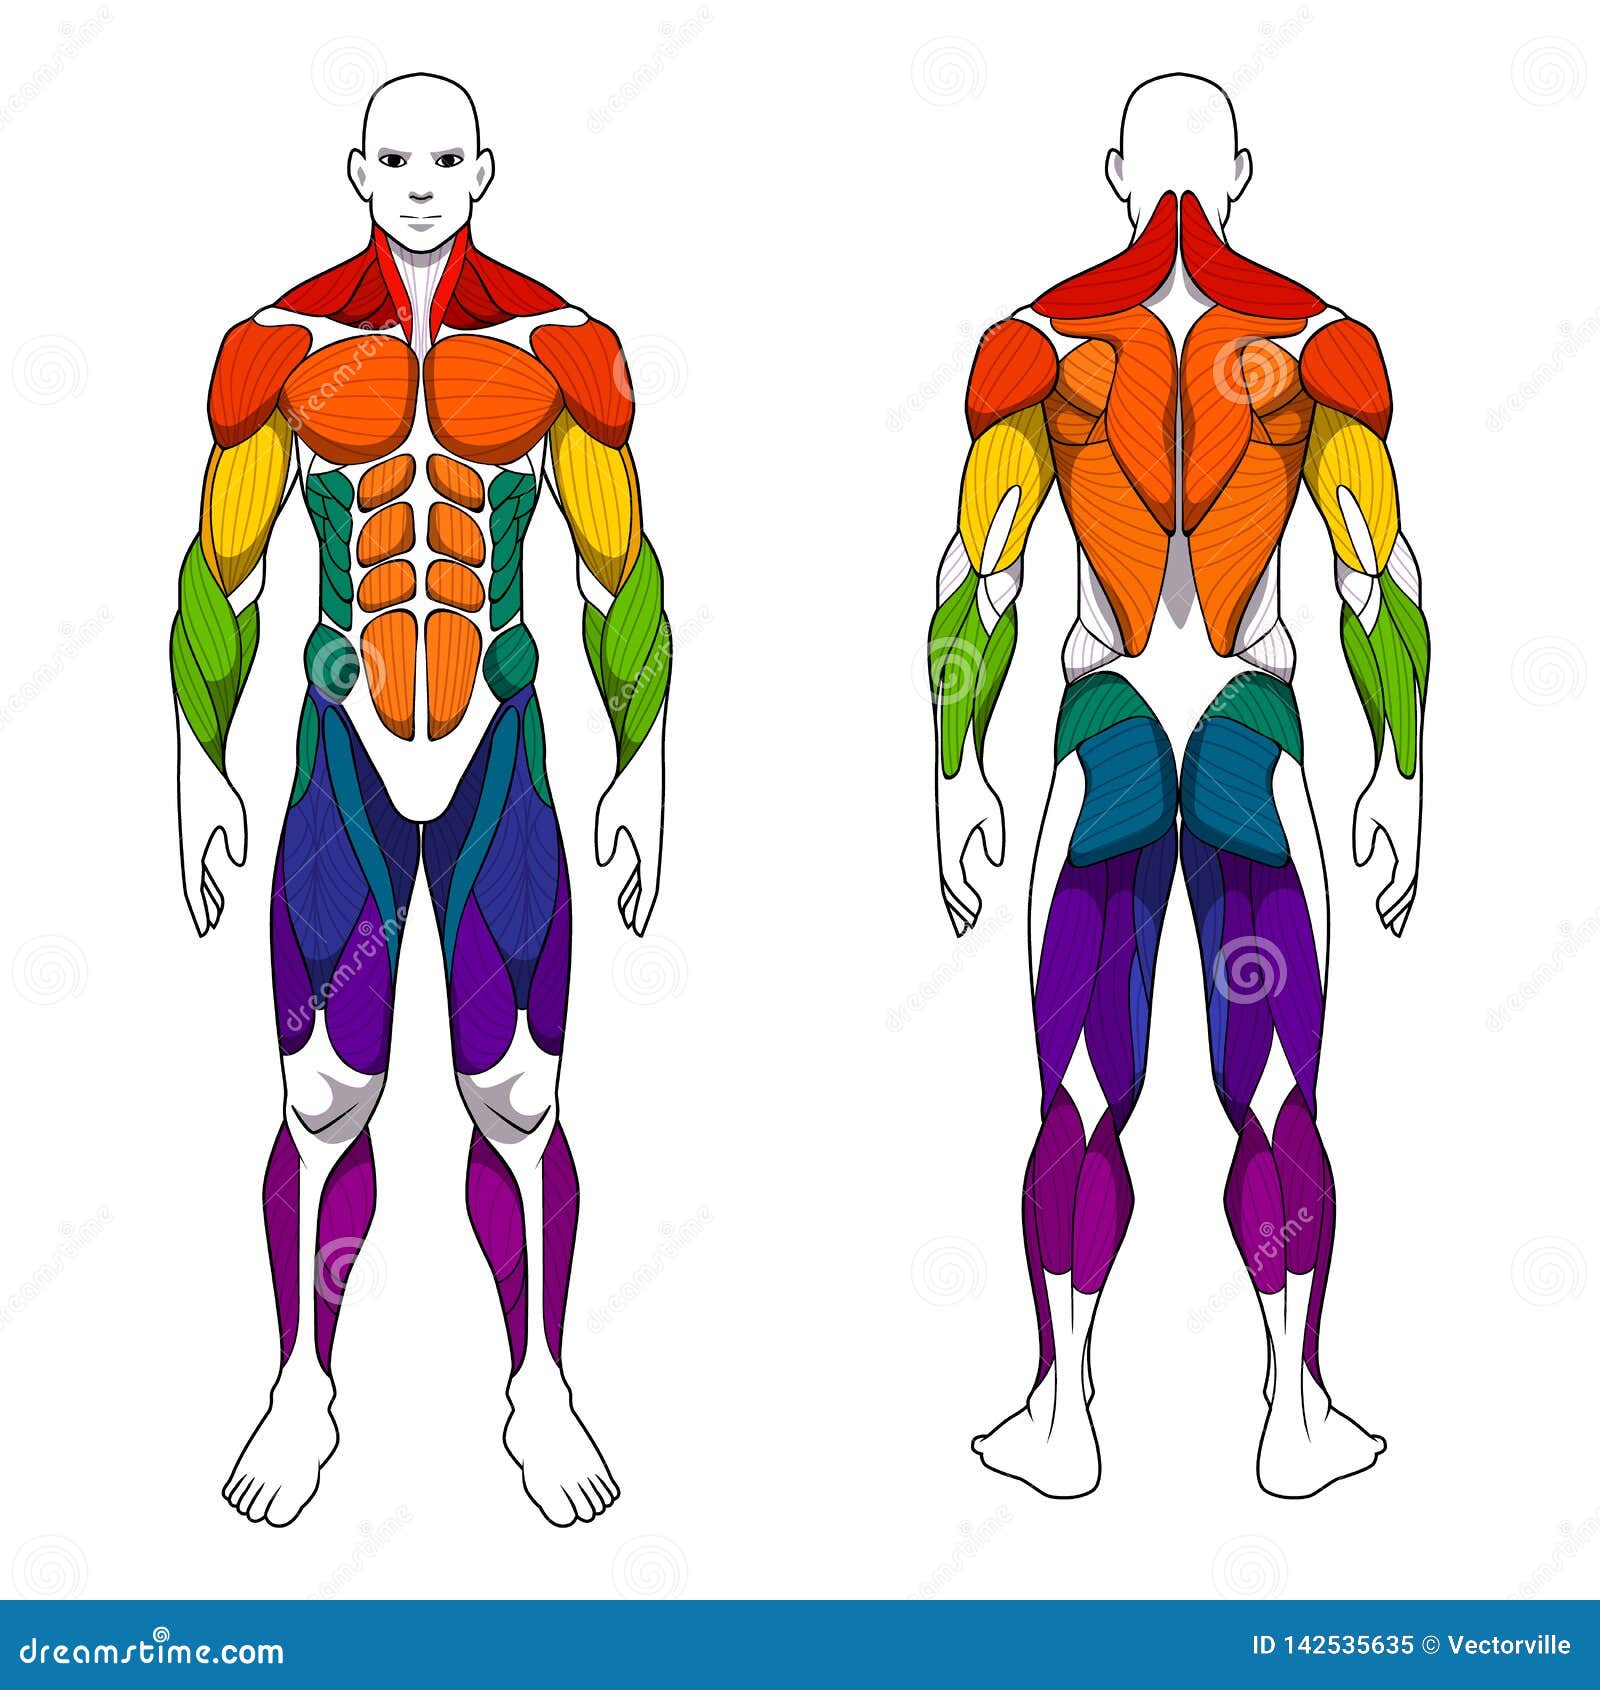 Arriba Imagen De Fondo Imagenes De Todos Los Musculos Del Cuerpo Humano El Ltimo